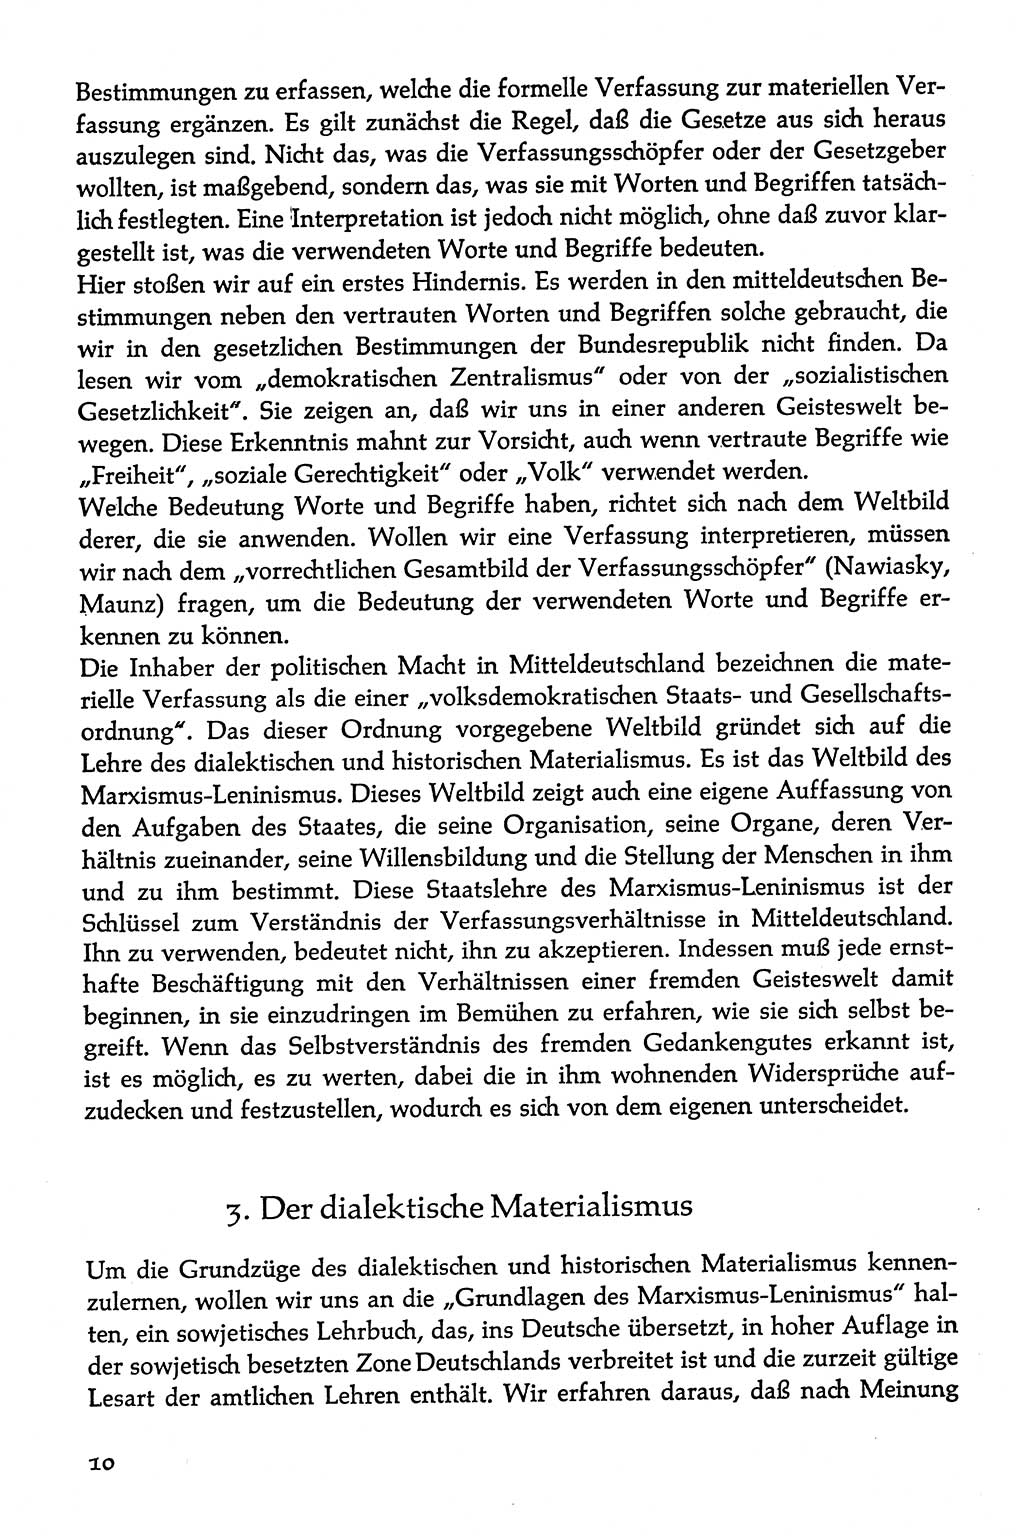 Volksdemokratische Ordnung in Mitteldeutschland [Deutsche Demokratische Republik (DDR)], Texte zur verfassungsrechtlichen Situation 1963, Seite 10 (Volksdem. Ordn. Md. DDR 1963, S. 10)